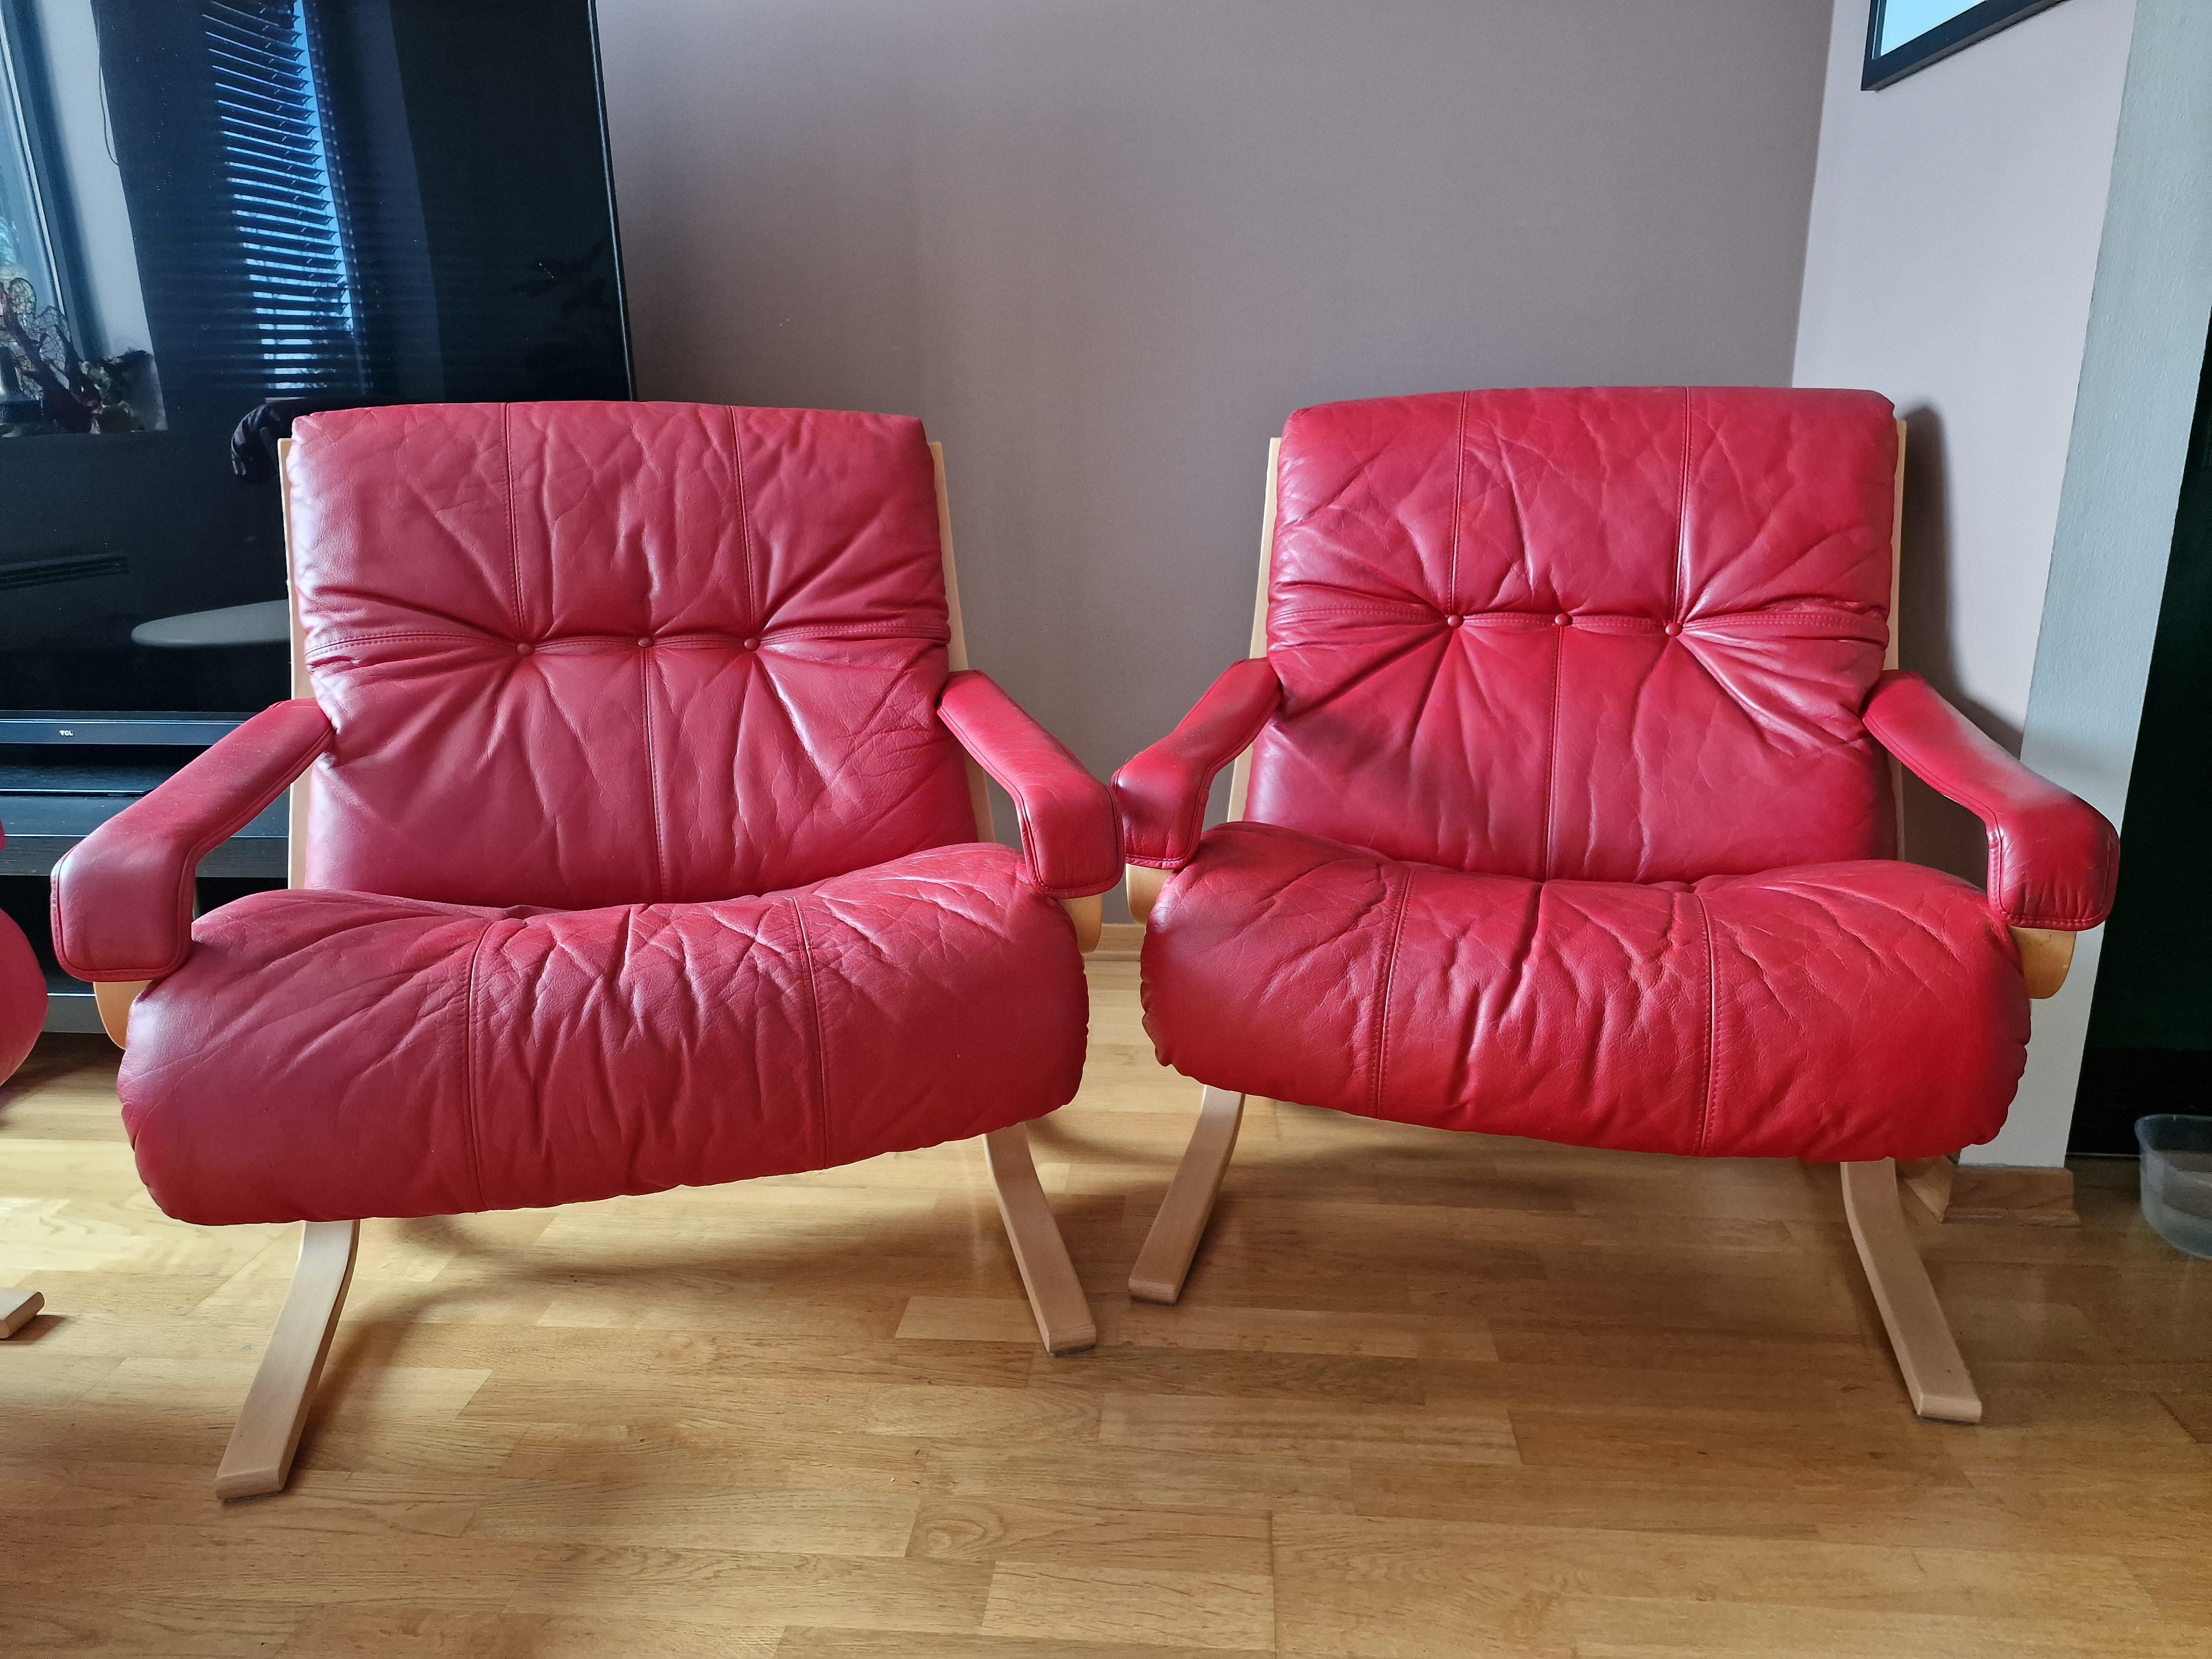 Siesta-Sessel aus der Mitte des 19. Jahrhunderts von dem norwegischen Designer Ingmar Relling für Westnofa Furniture. Formen aus Bugholz, rotes Leder. 
Ingmar Relling gewann 1965 den ersten Preis beim Wettbewerb des norwegischen Councill mit dem